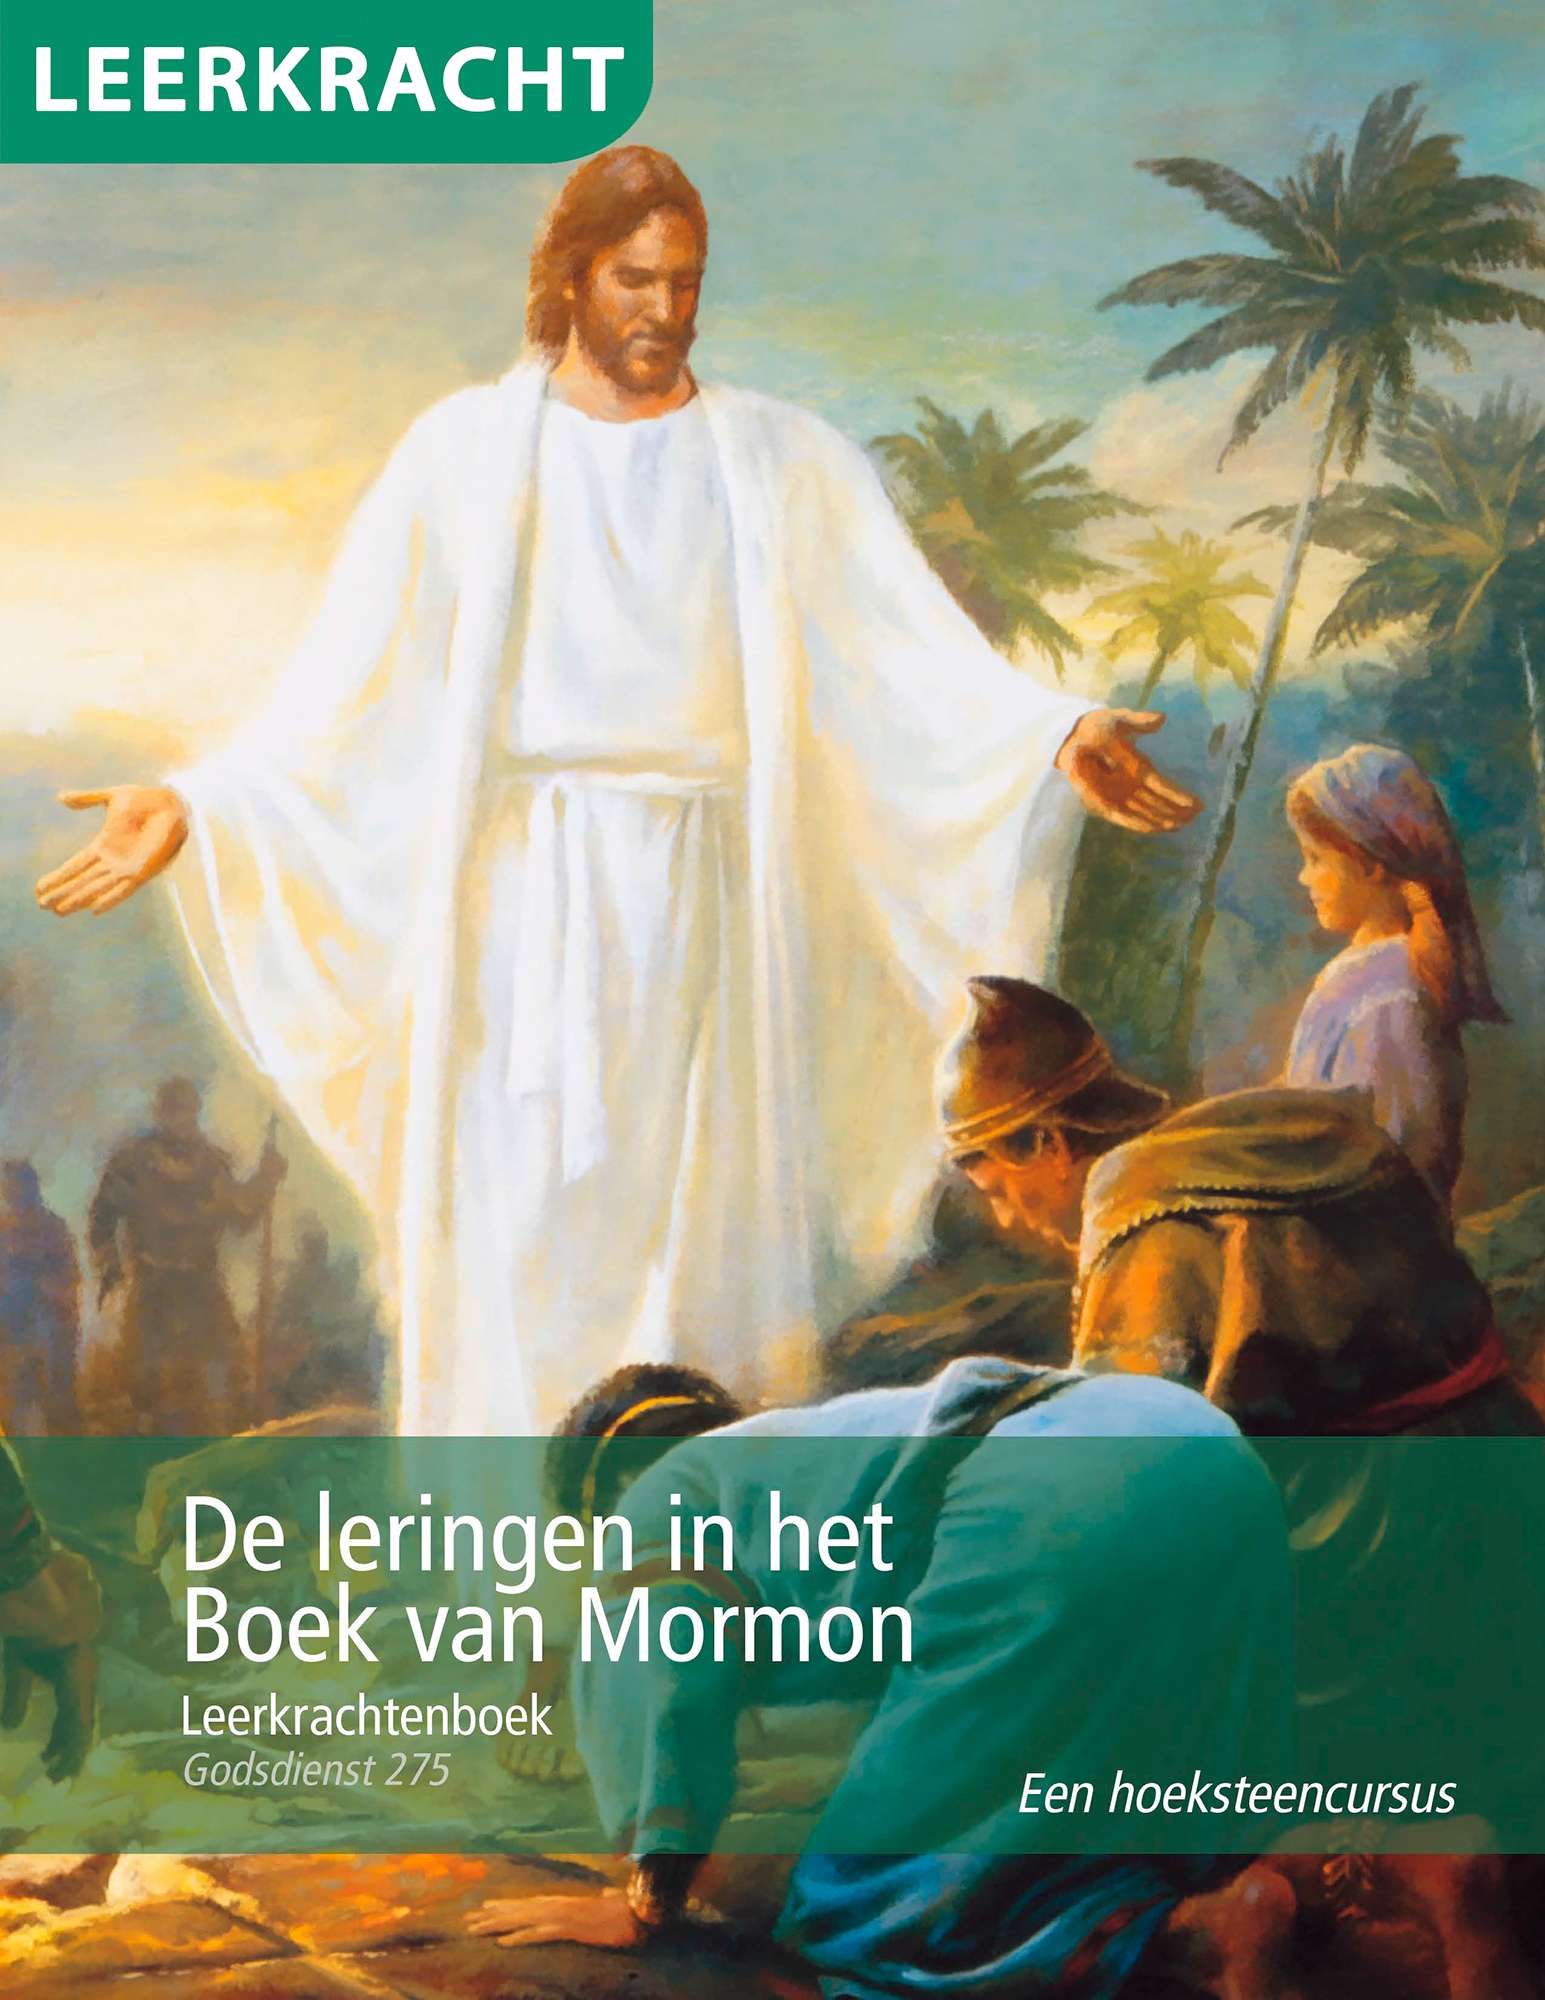 De leringen in het Boek van Mormon: leerkrachtenboek (Godsdienst 275)